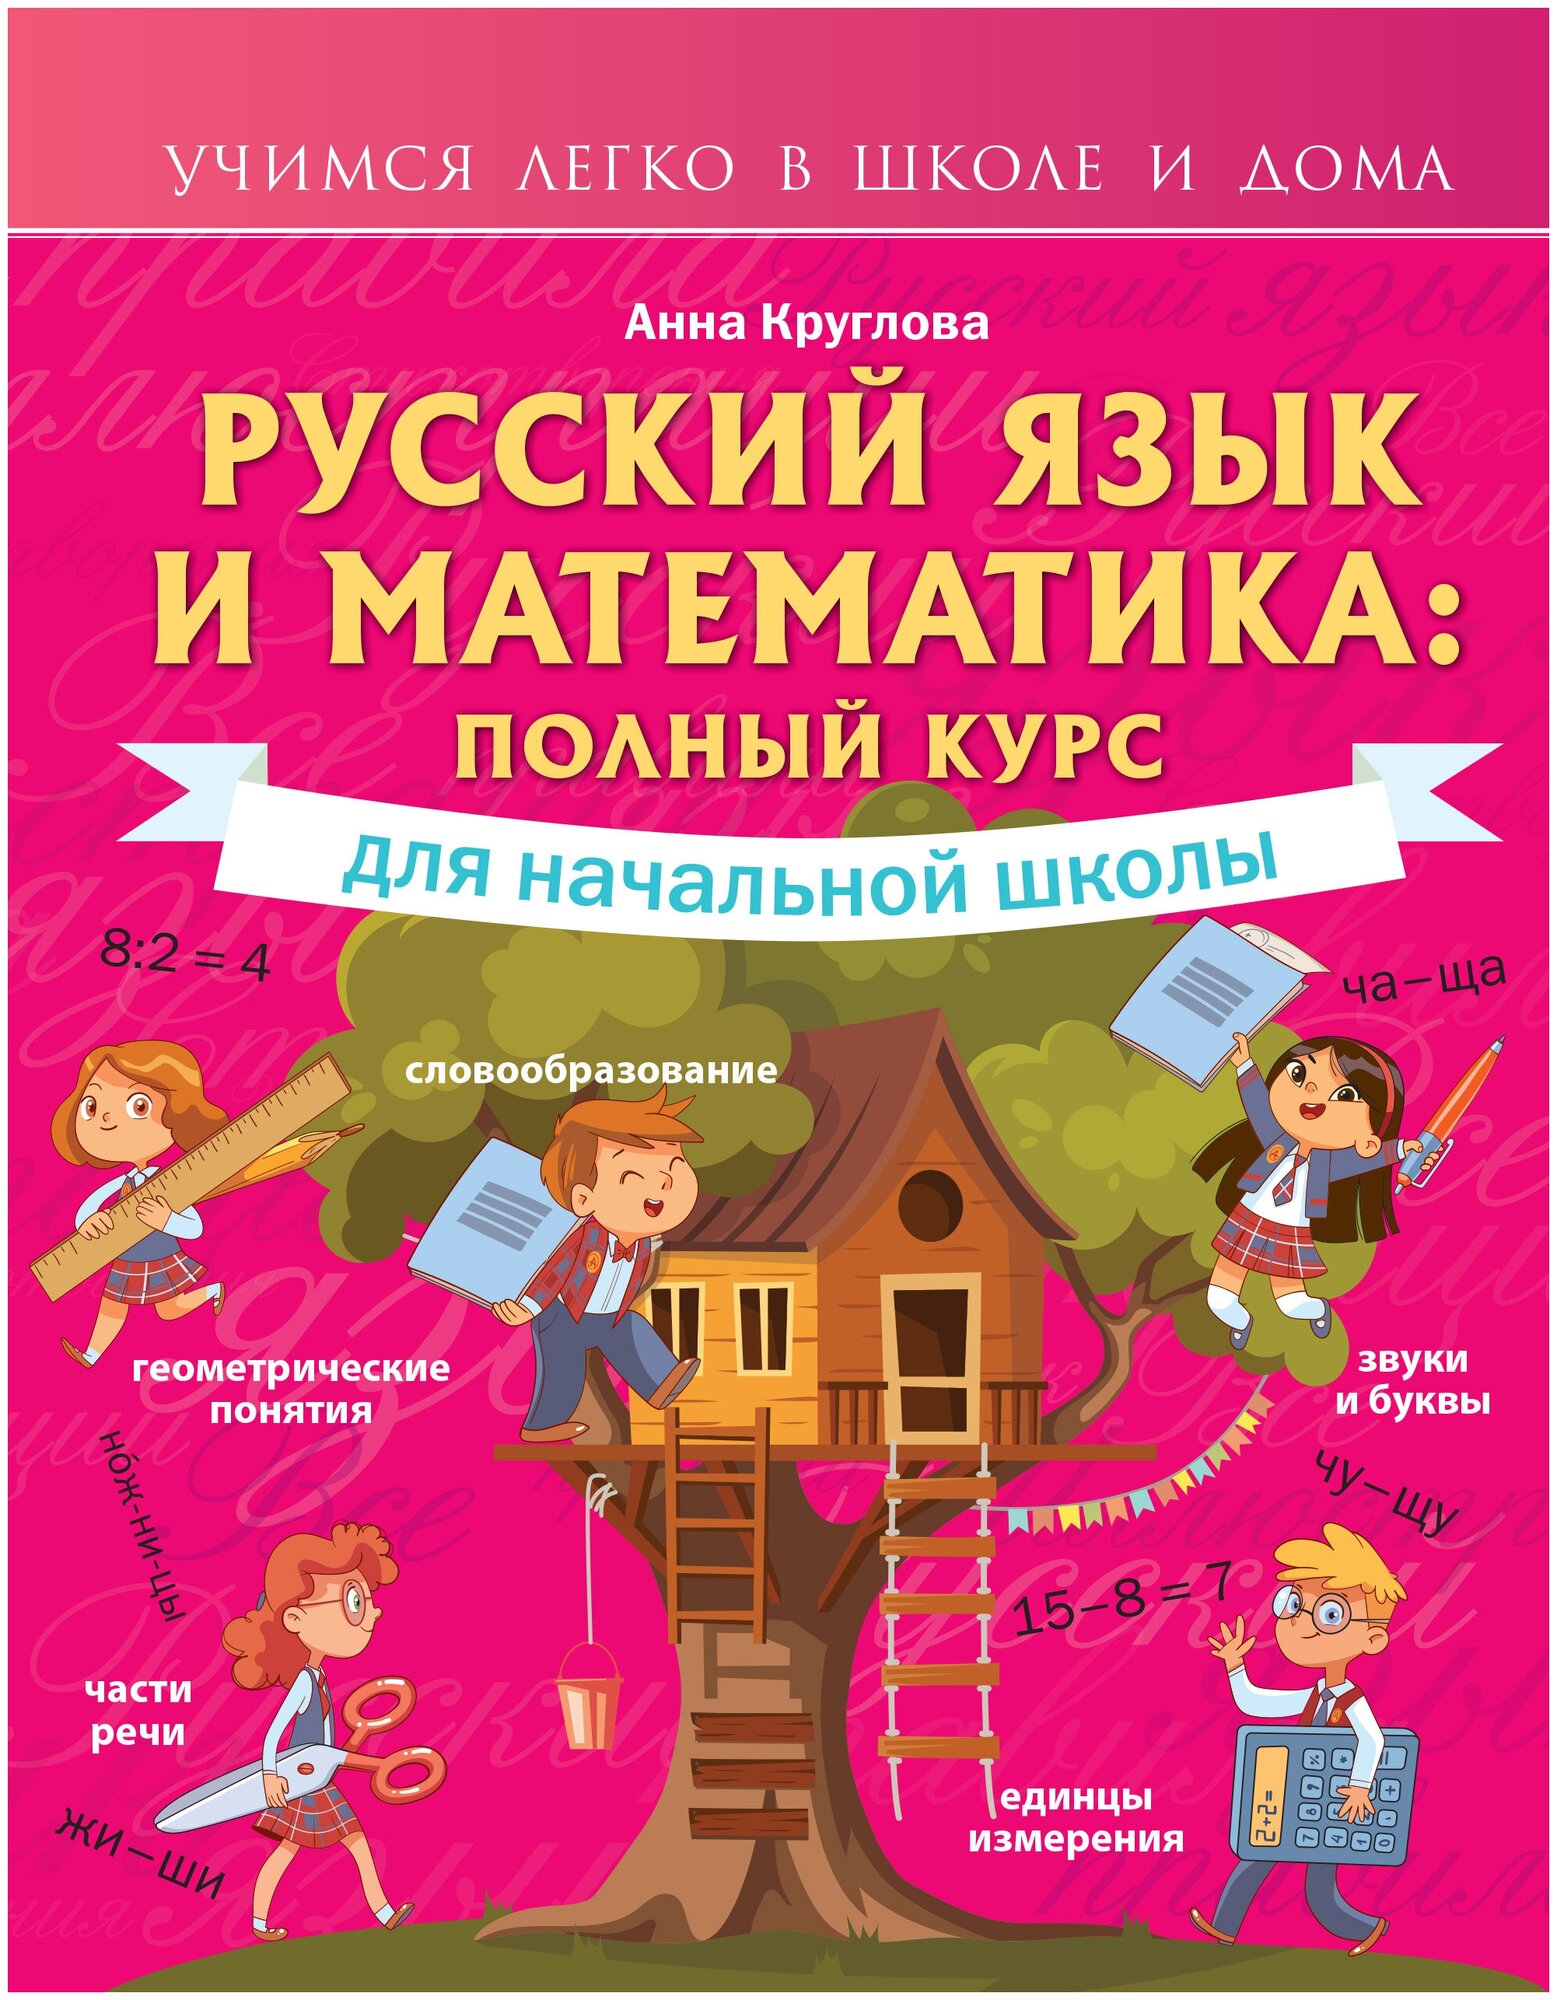 Русский язык и математика: полный курс для начальной школы - фото №1